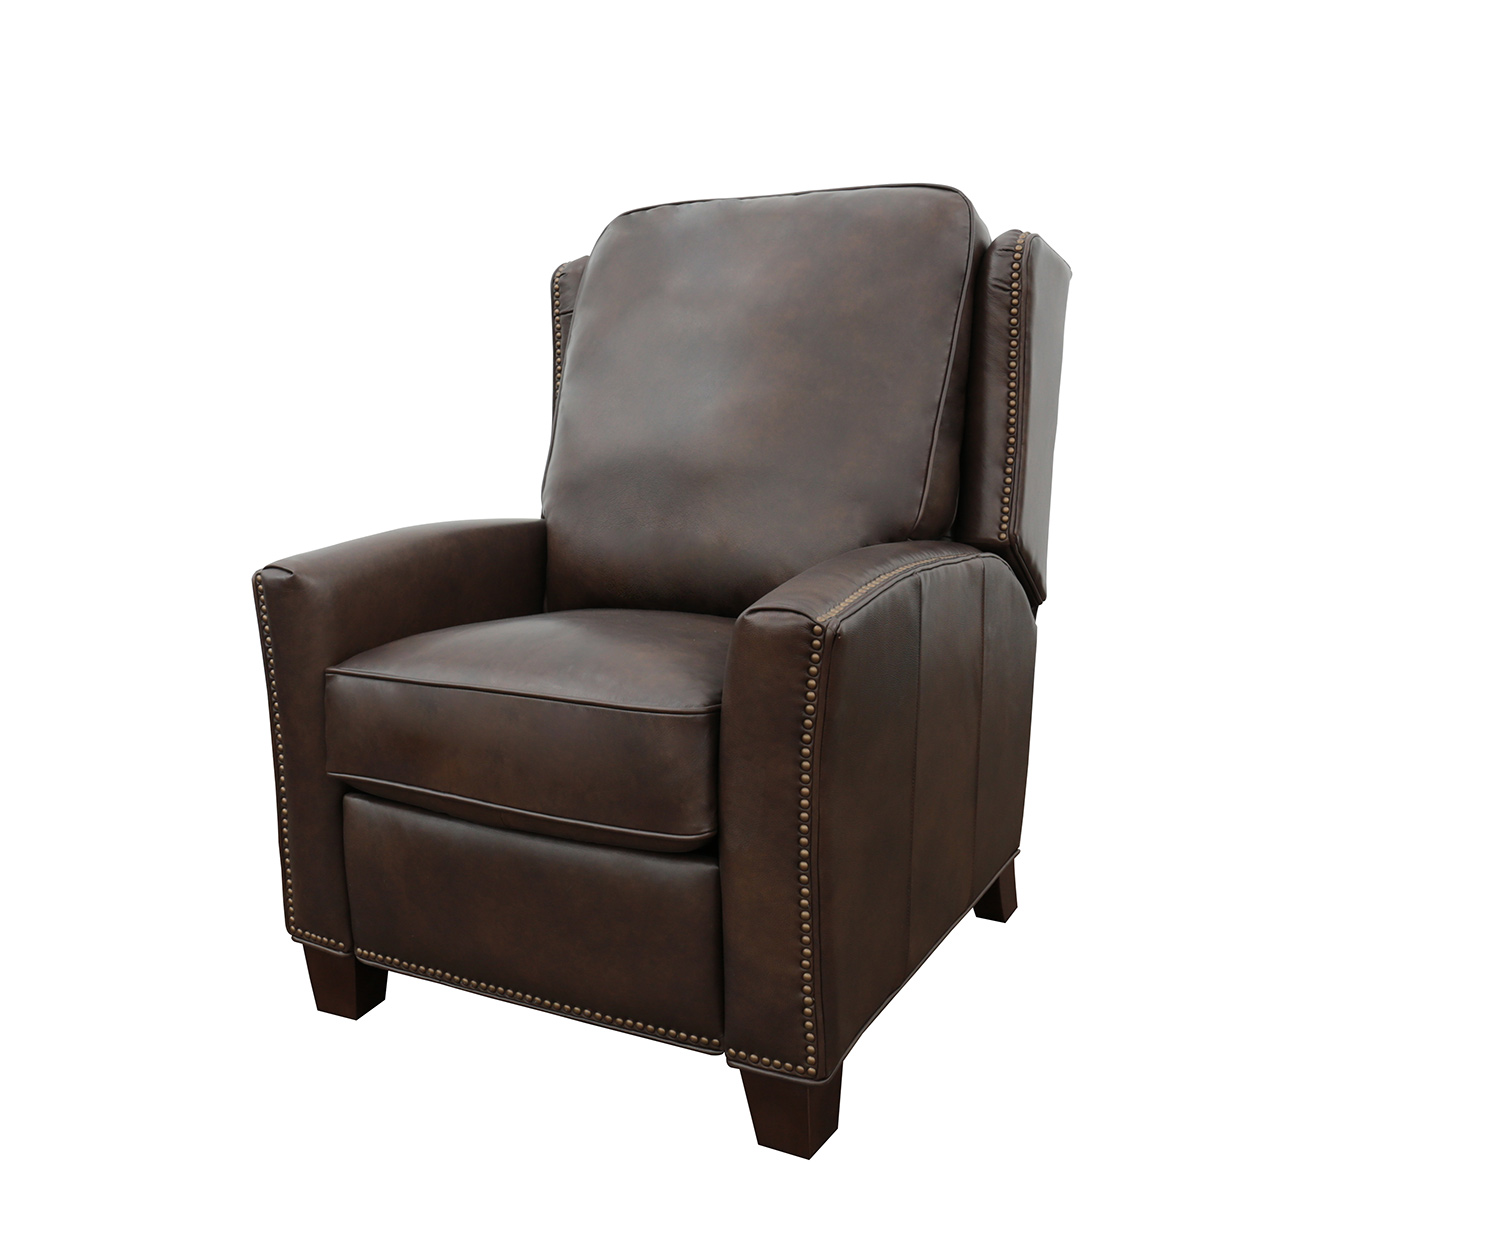 Barcalounger Woodbridge Power Recliner Chair - Ashford Walnut/All Leather